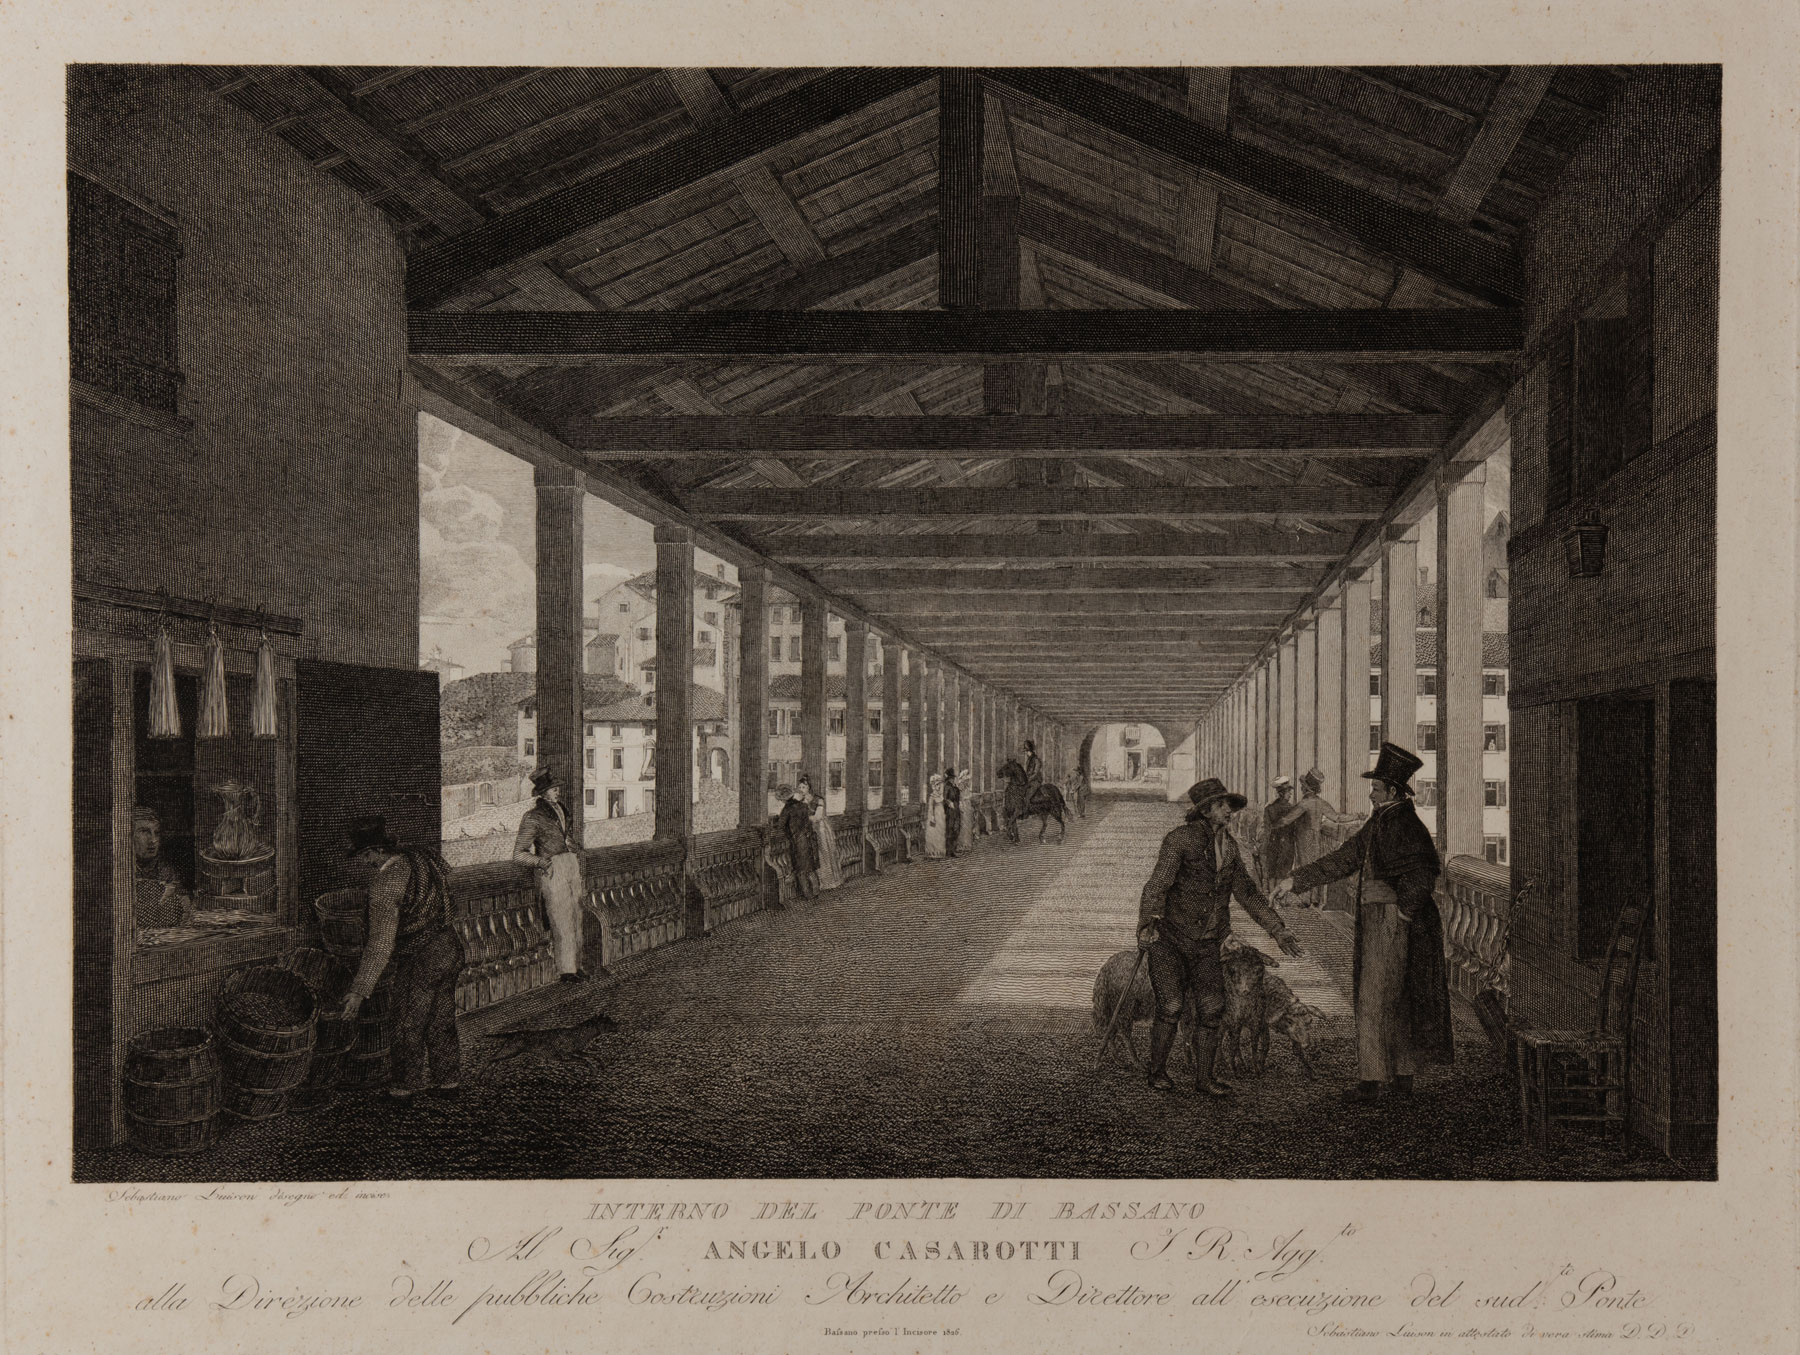 Sebastiano Lovison, Interno del Ponte Vecchio di Bassano (1826; bulino, 330 x 430 mm; Bassano del Grappa, Museo Civico, INC. BASS. 393, dedicata a Casarotti)
